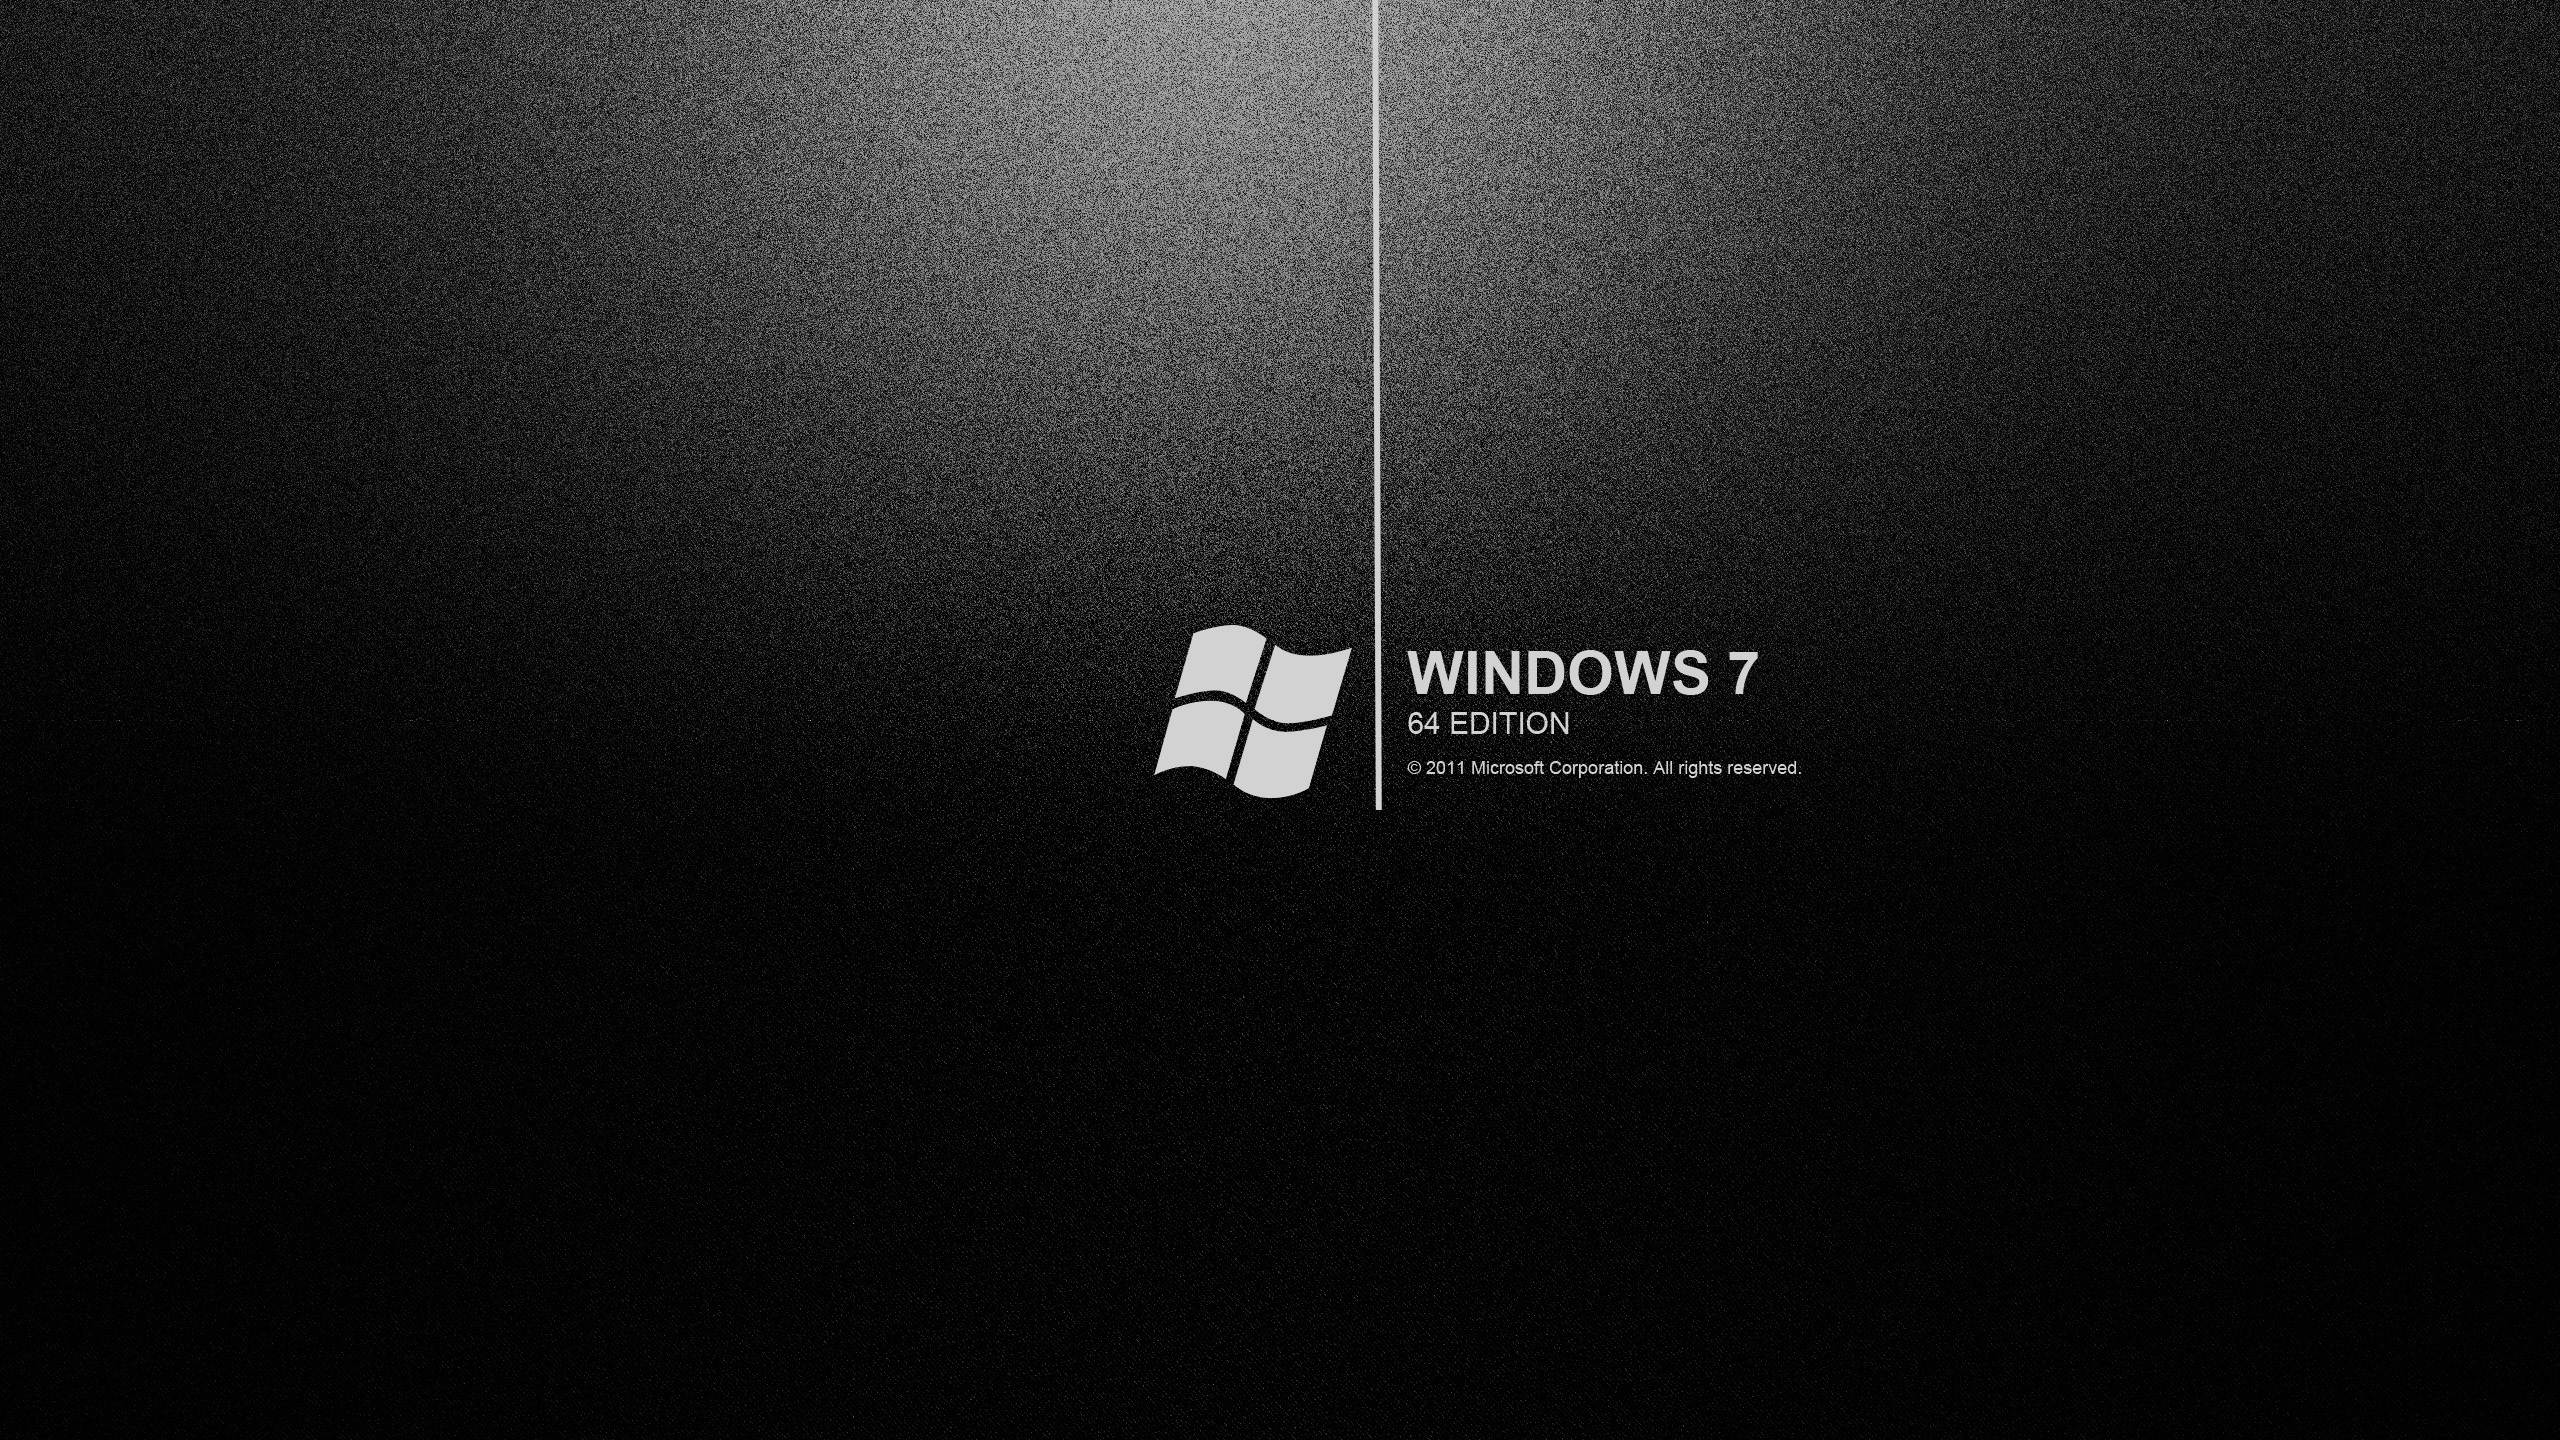 Bạn yêu thích màu đen và muốn sở hữu những bức hình nền Windows 7 đẹp mắt theo phong cách đen trắng? Không cần phải tốn công tìm kiếm nữa, hãy click vào hình ảnh liên quan để tải về hoàn toàn miễn phí những bức hình đen đầy tinh tế và ấn tượng.